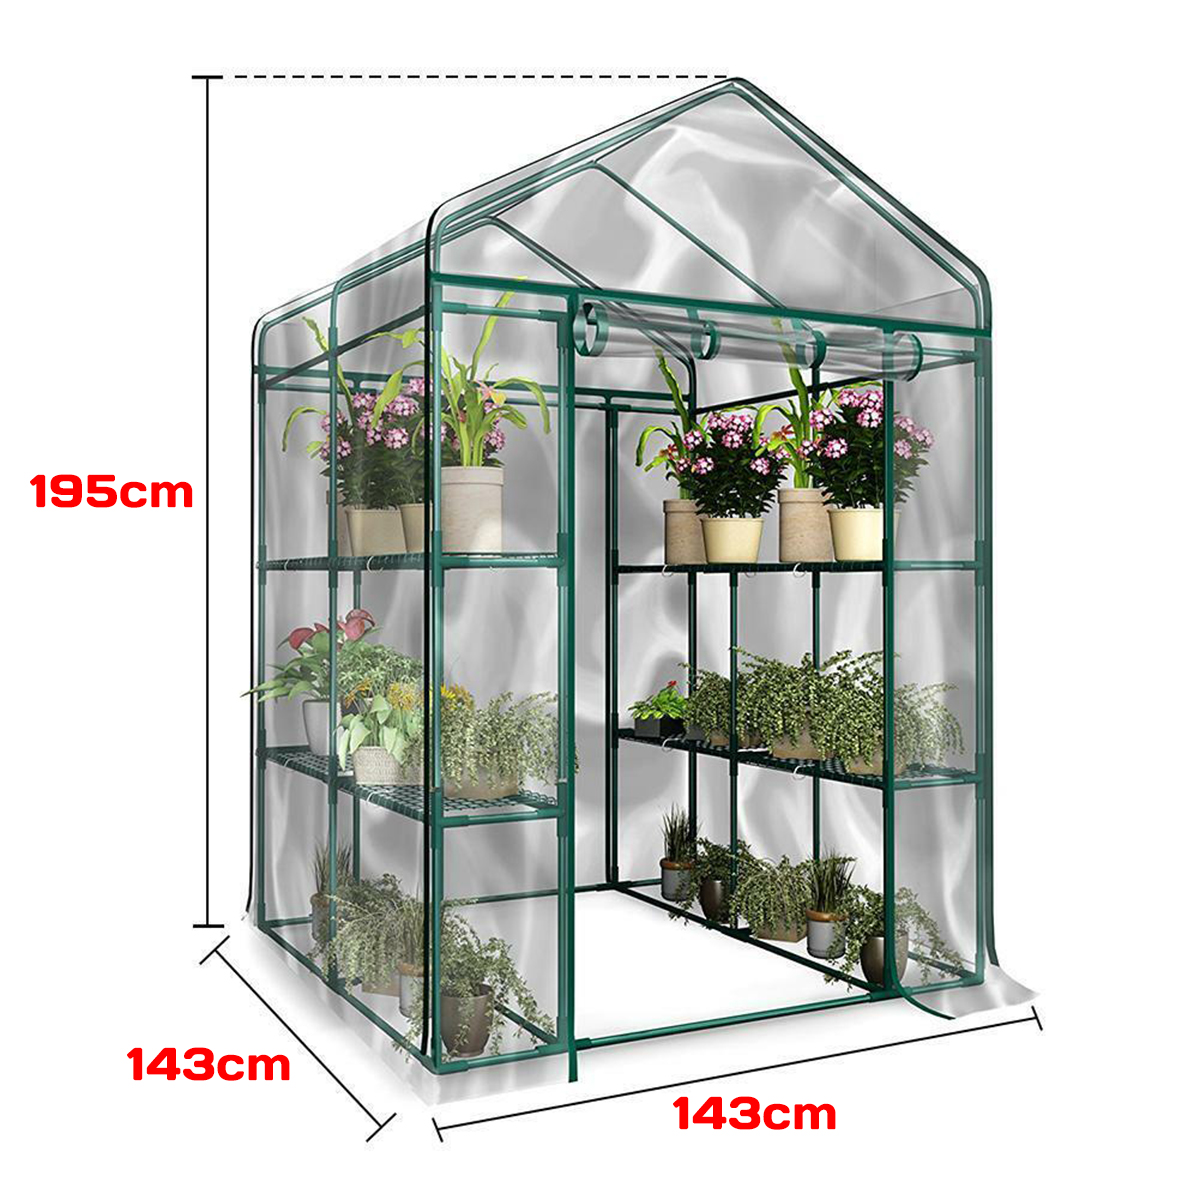 3-Tier-Portable-Greenhouse-6-Shelves-PVC-Cover-Garden-Cover-Plants-Flower-House-143X143X195cm-1551354-4